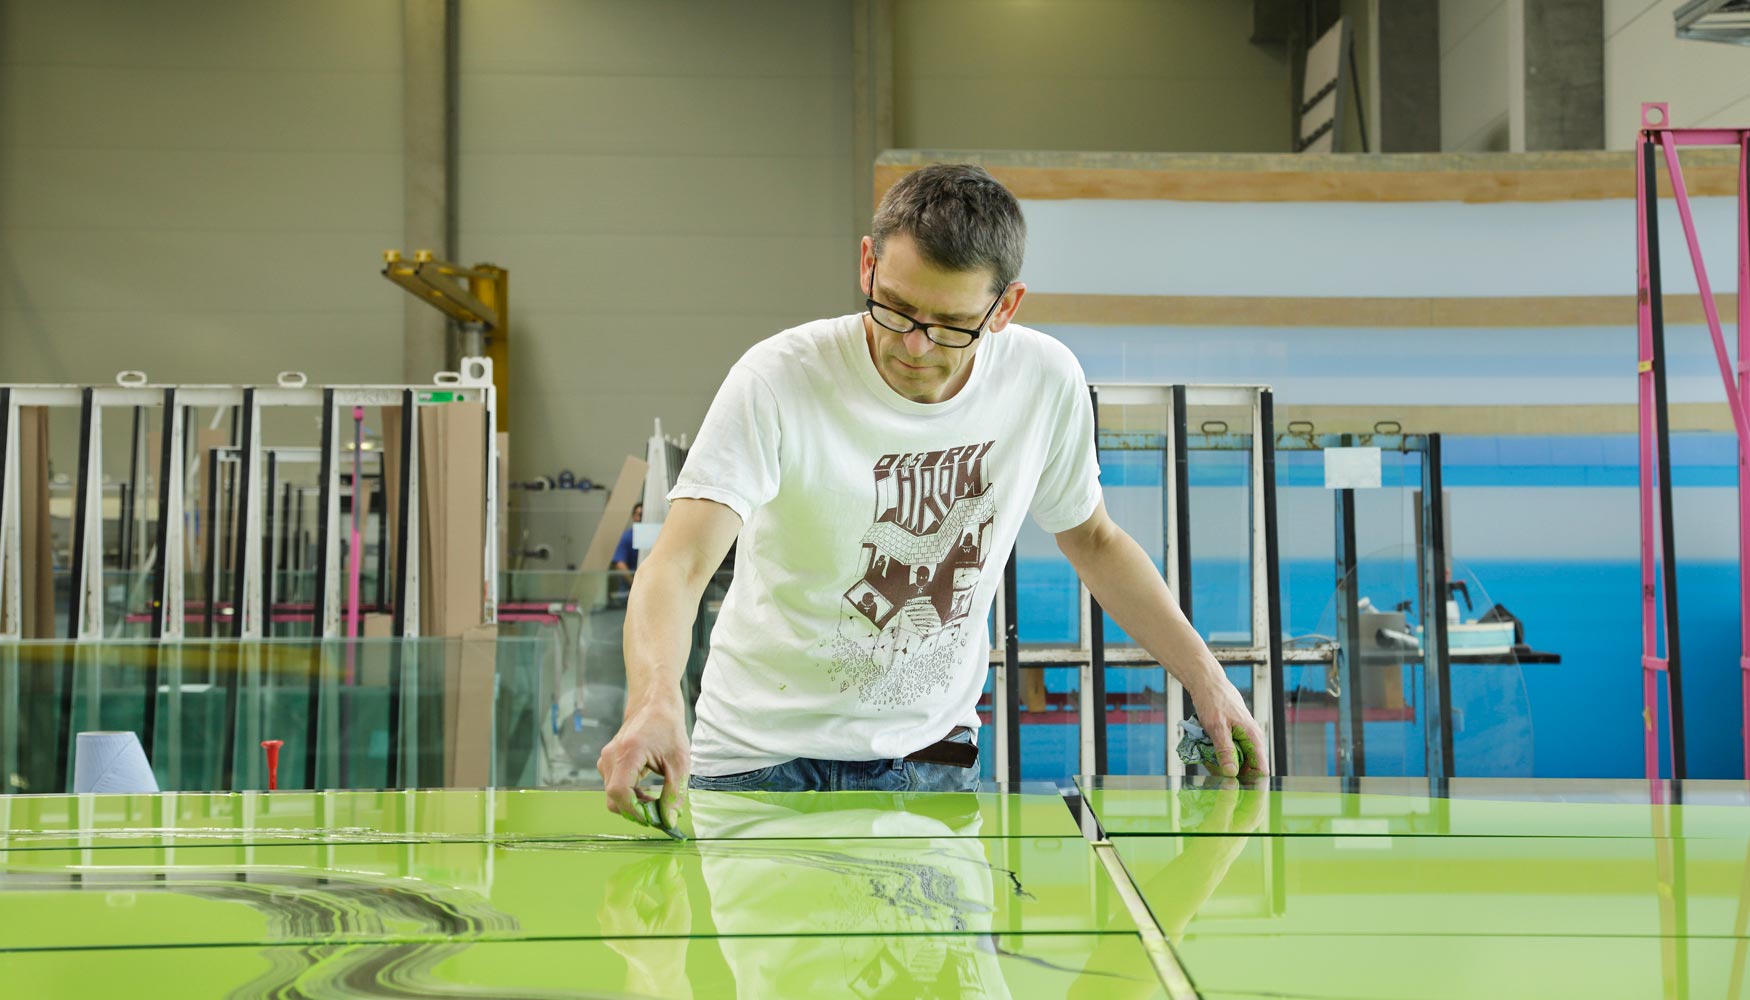 El artista Manuel Franke interviene sobre las placas de vidrio en las instalaciones de Glas Trsch